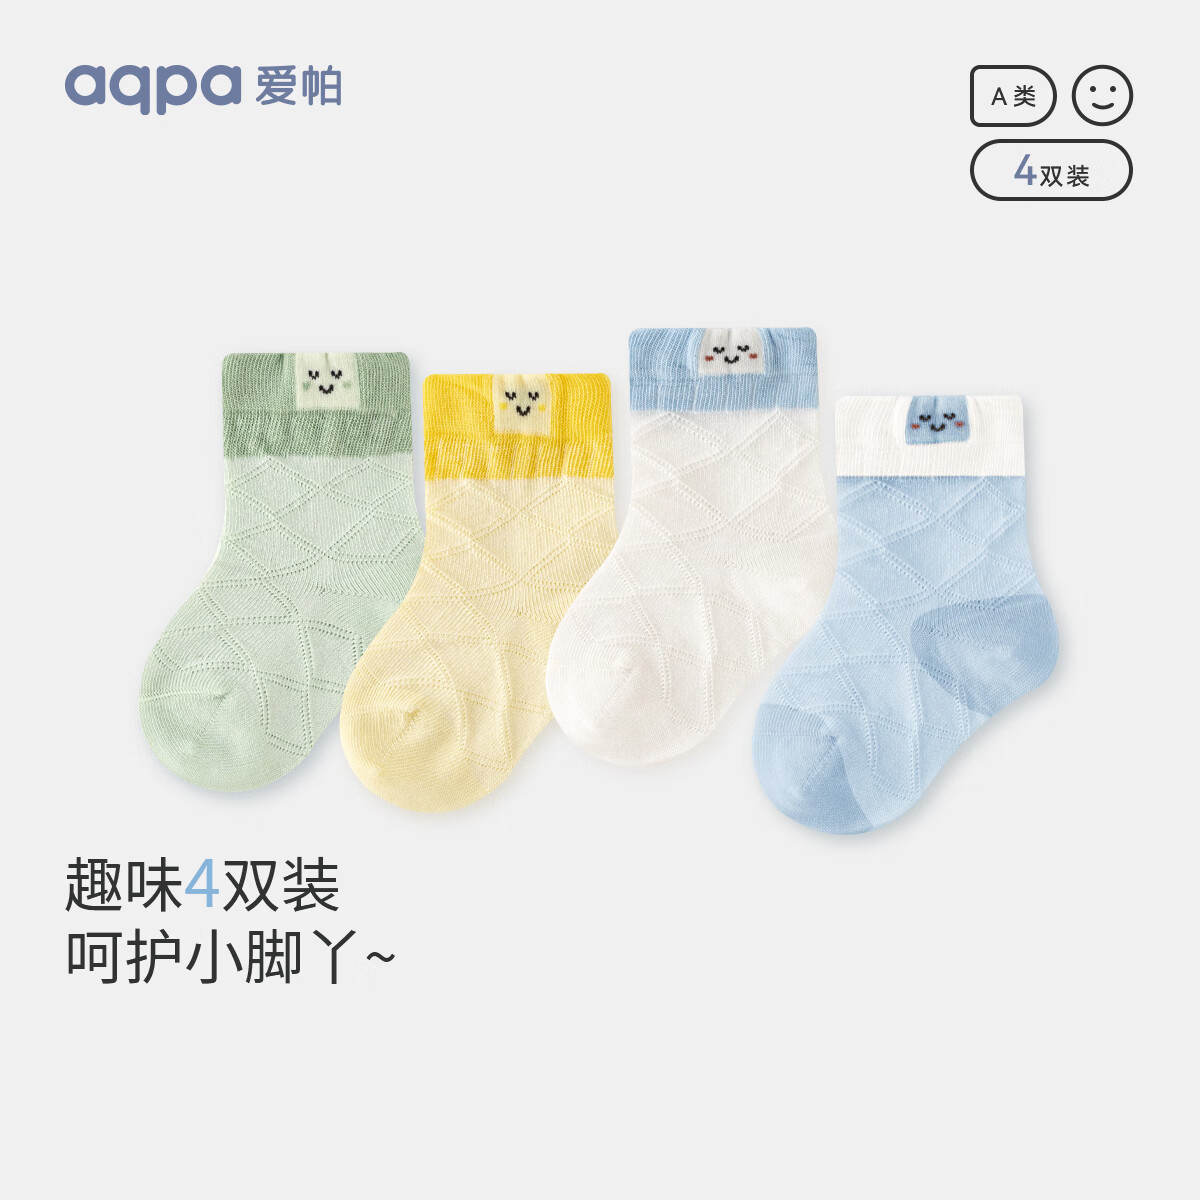 aqpa 婴儿袜子夏季透气棉质宝宝袜子儿童无骨舒适透气袜子 若草婴黄白淡蓝 1-3岁 券后29元